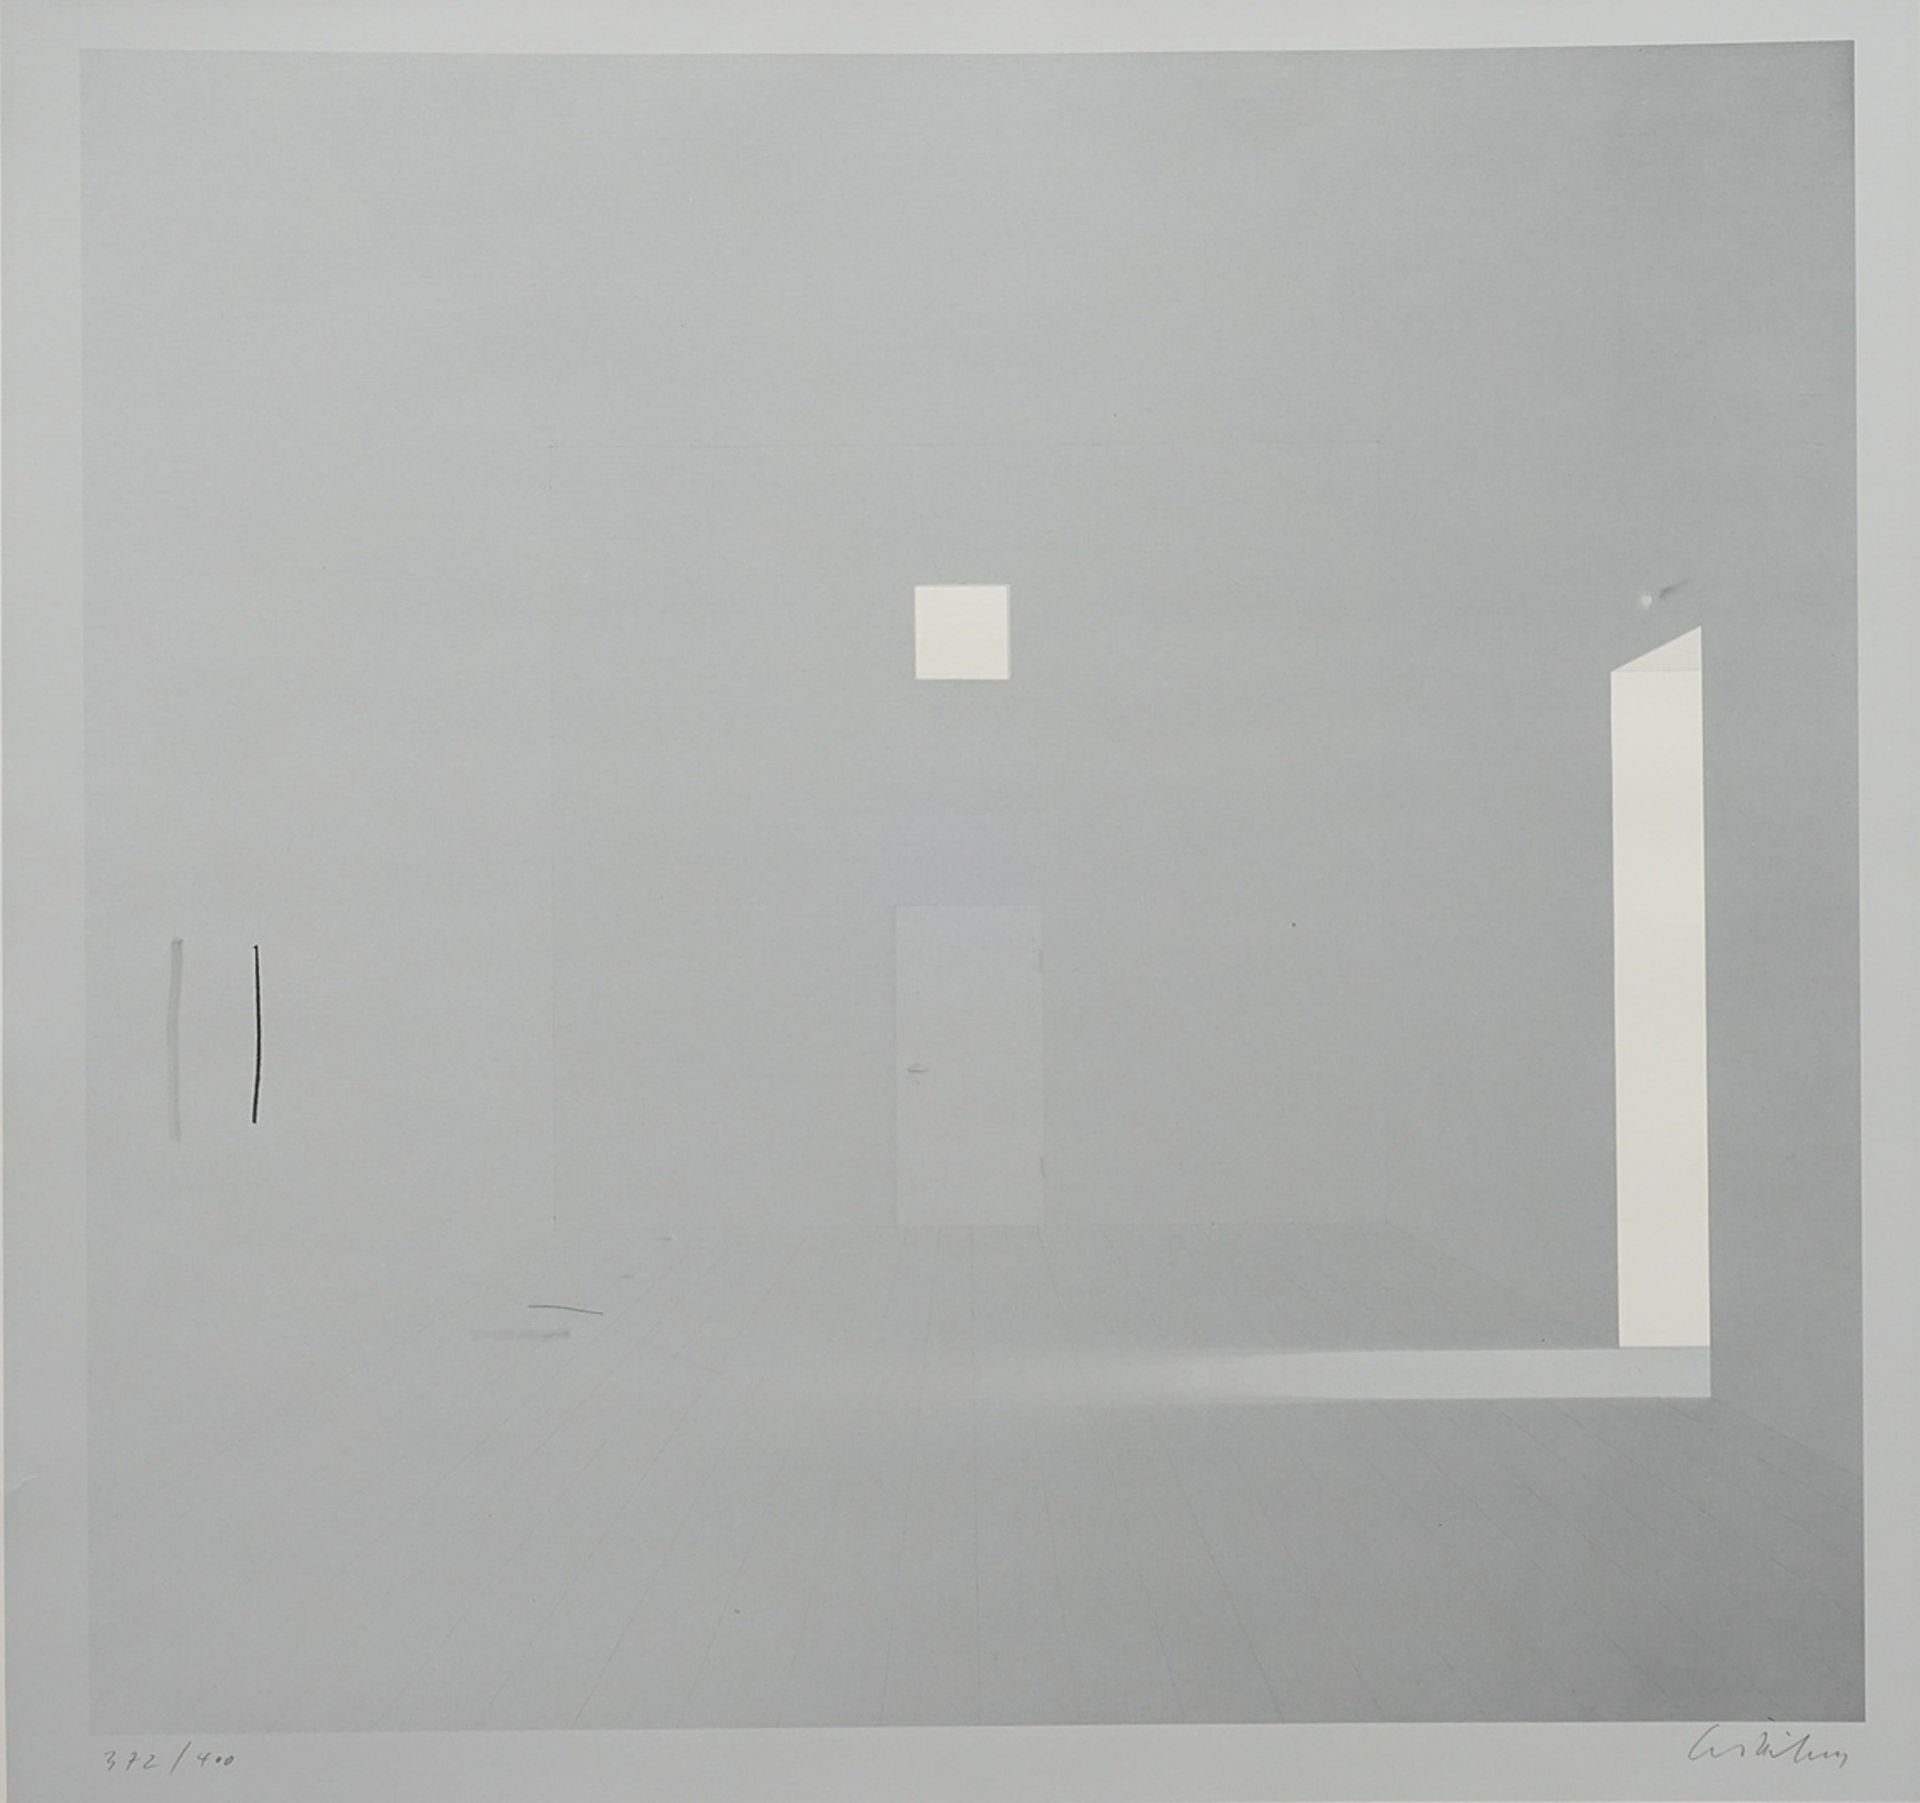 Ben Willikens (born 1939), Room in gray